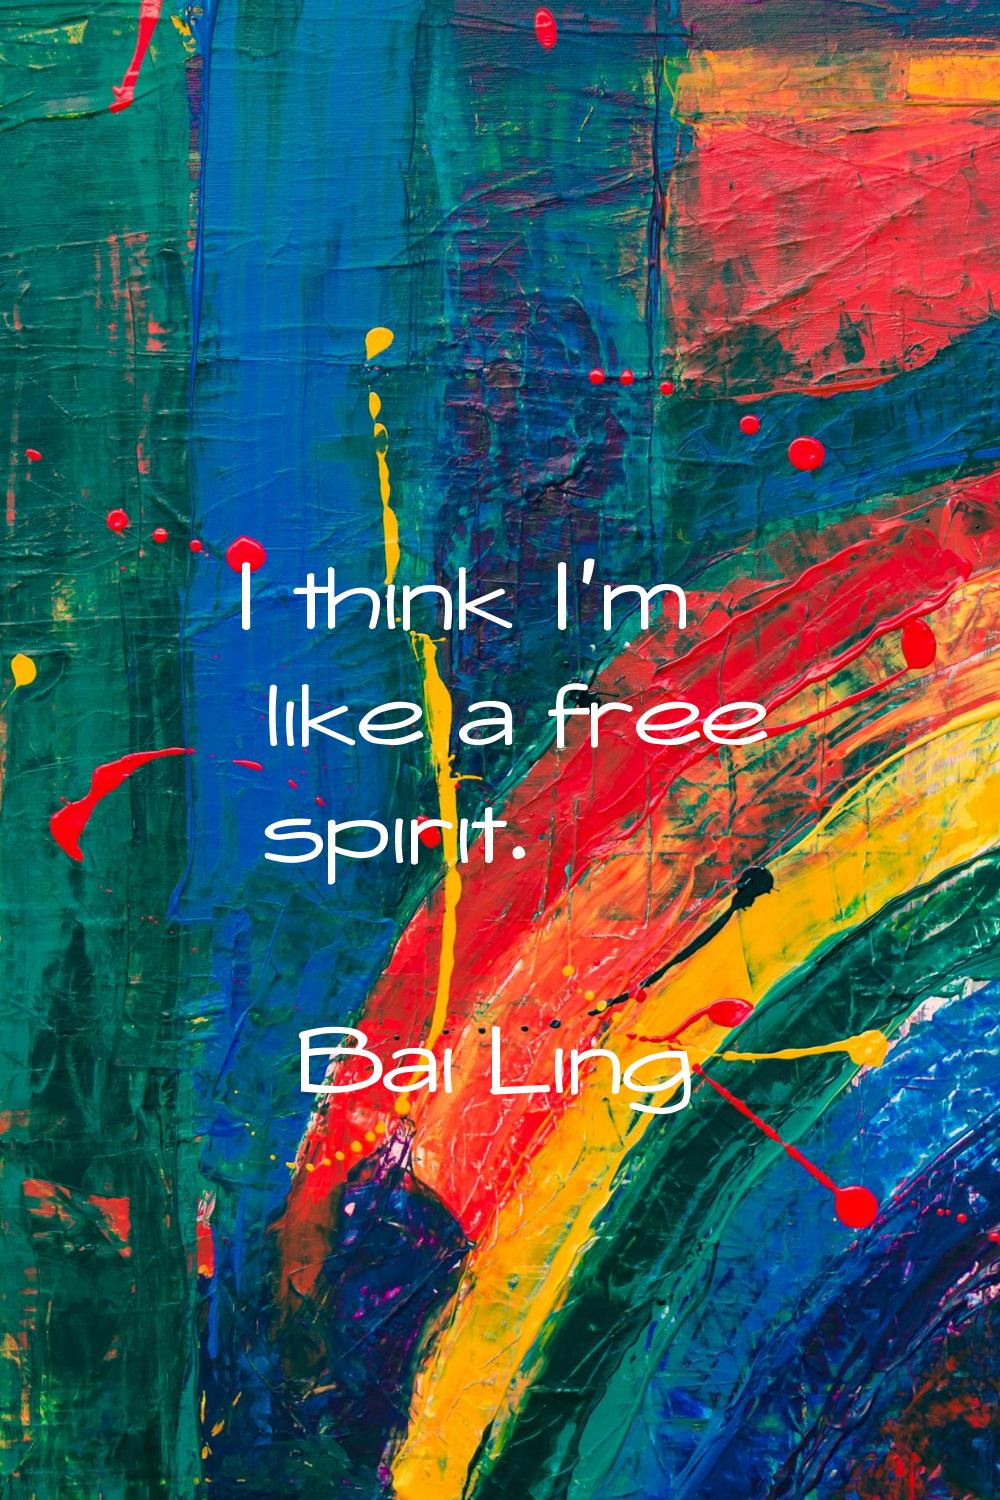 I think I'm like a free spirit.